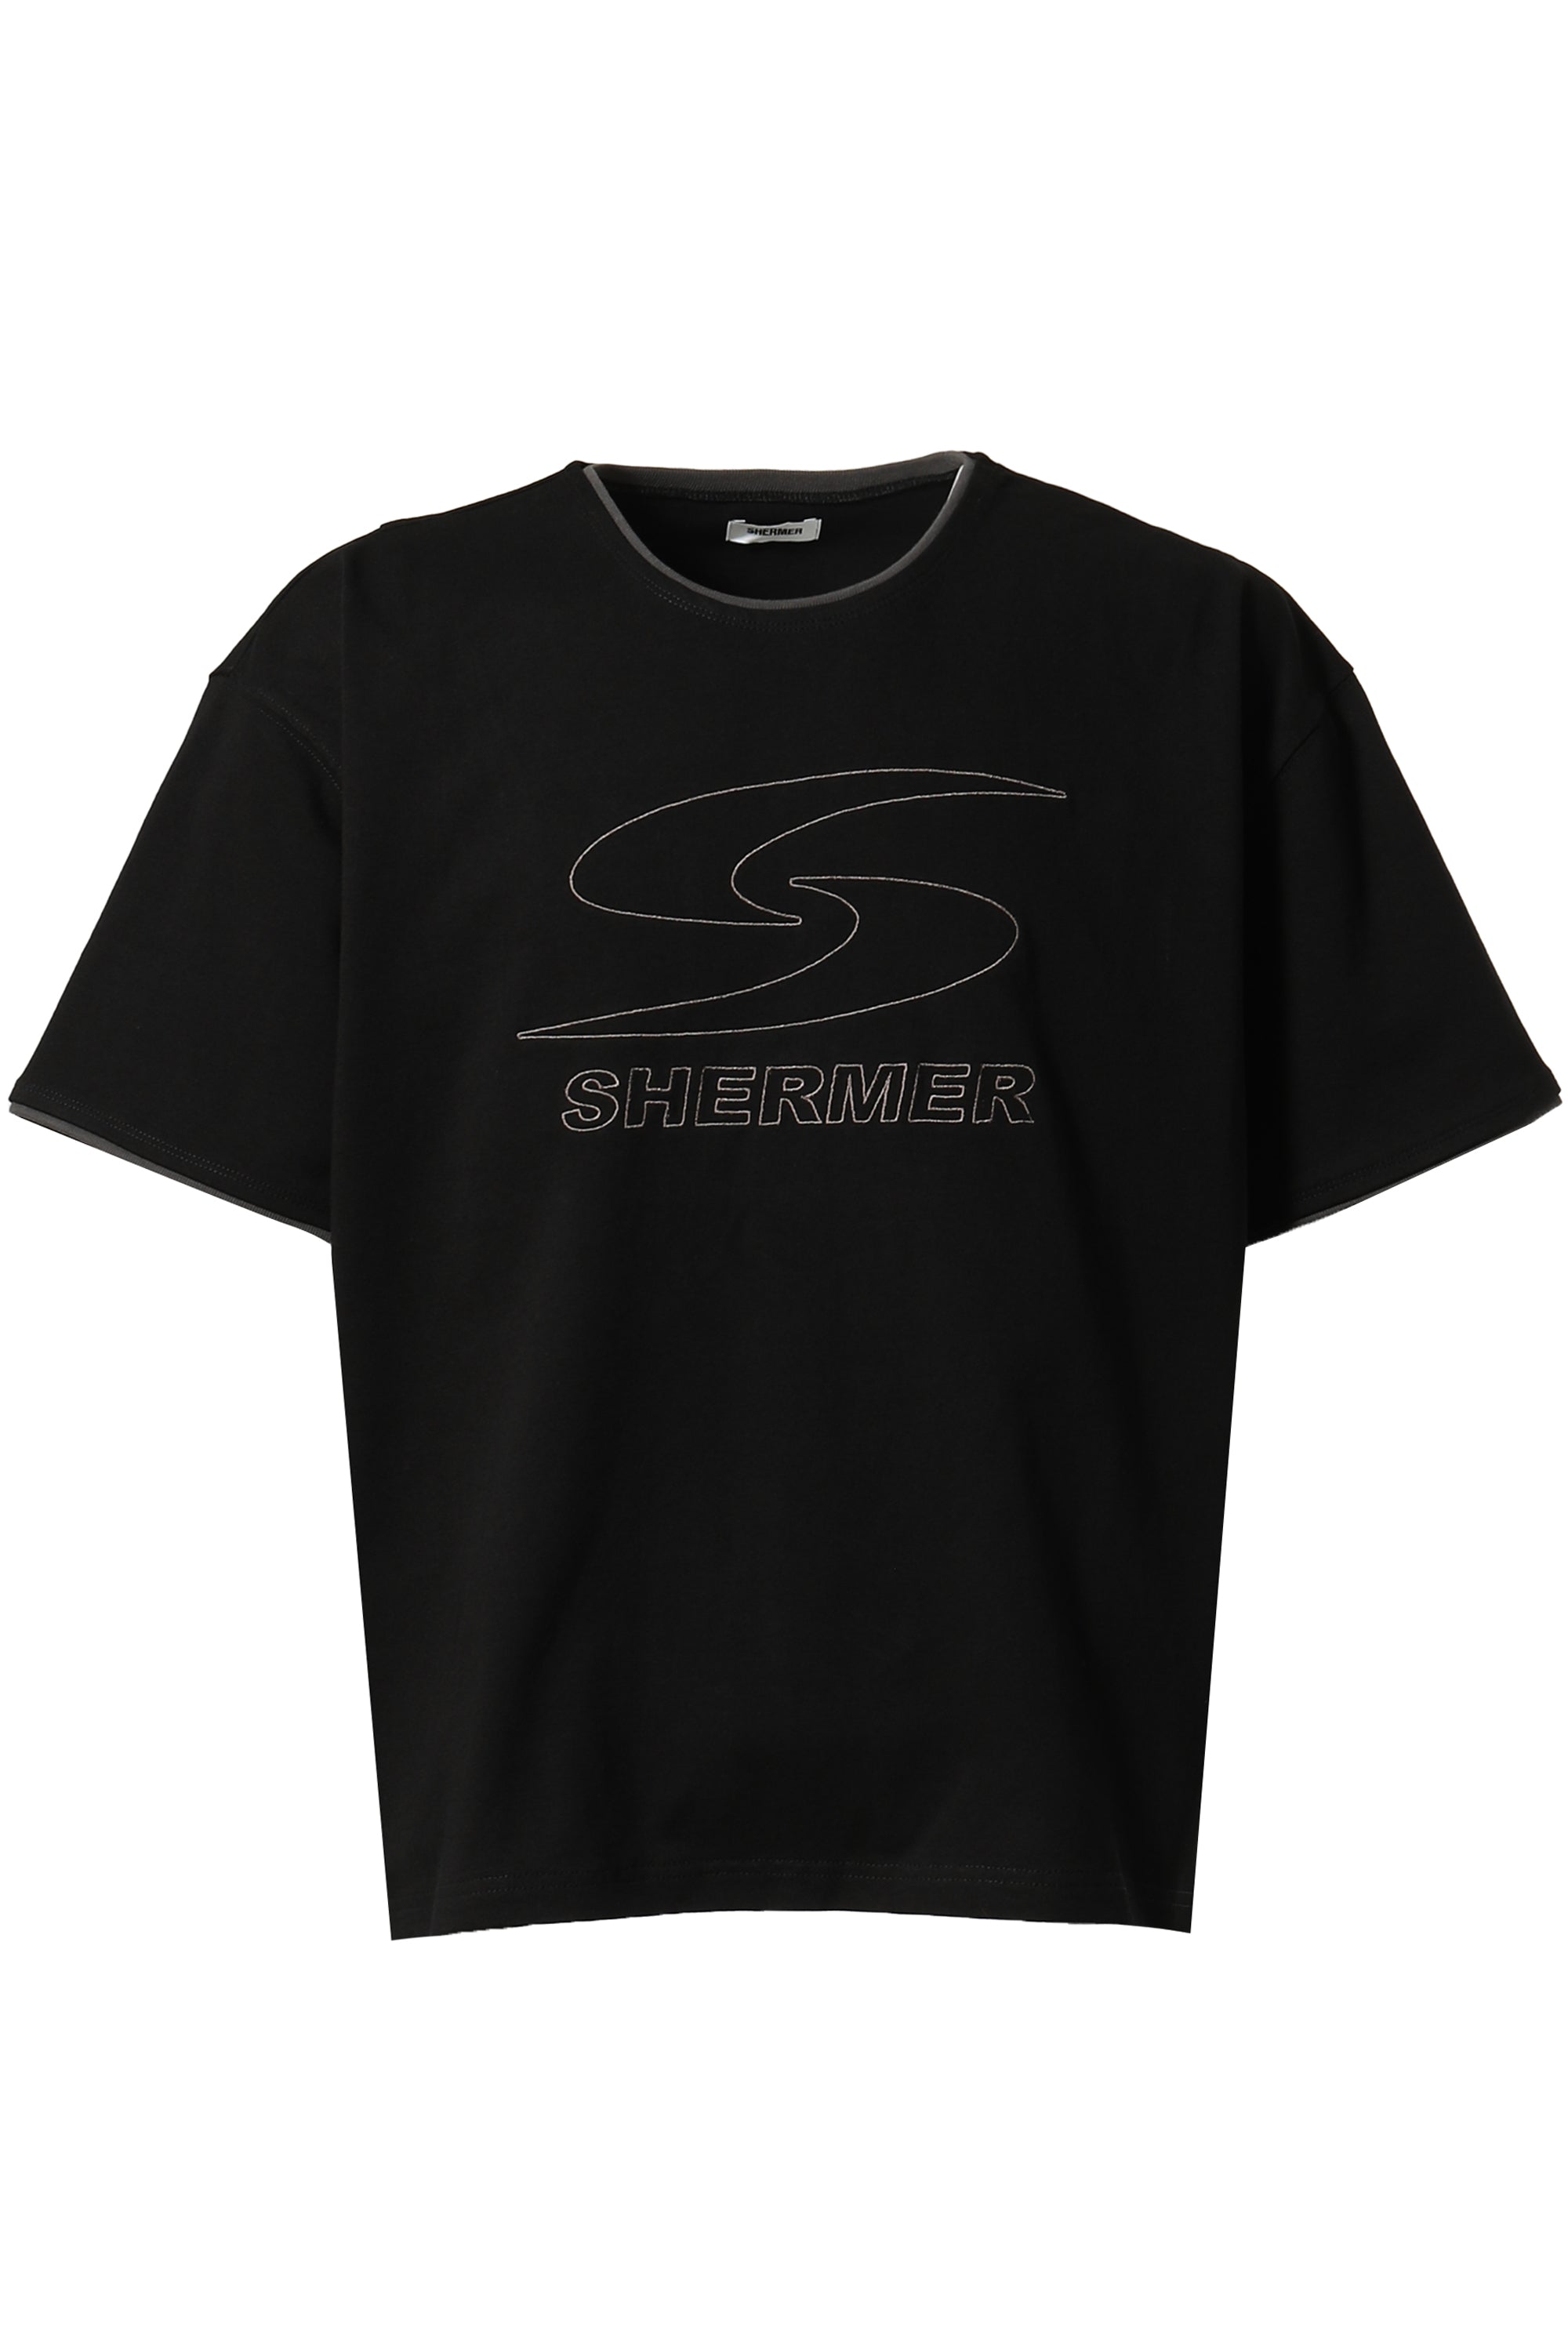 SHERMER ACADEMY Tシャツ 新品 BOYS IN TOYLAND | www.darquer.fr